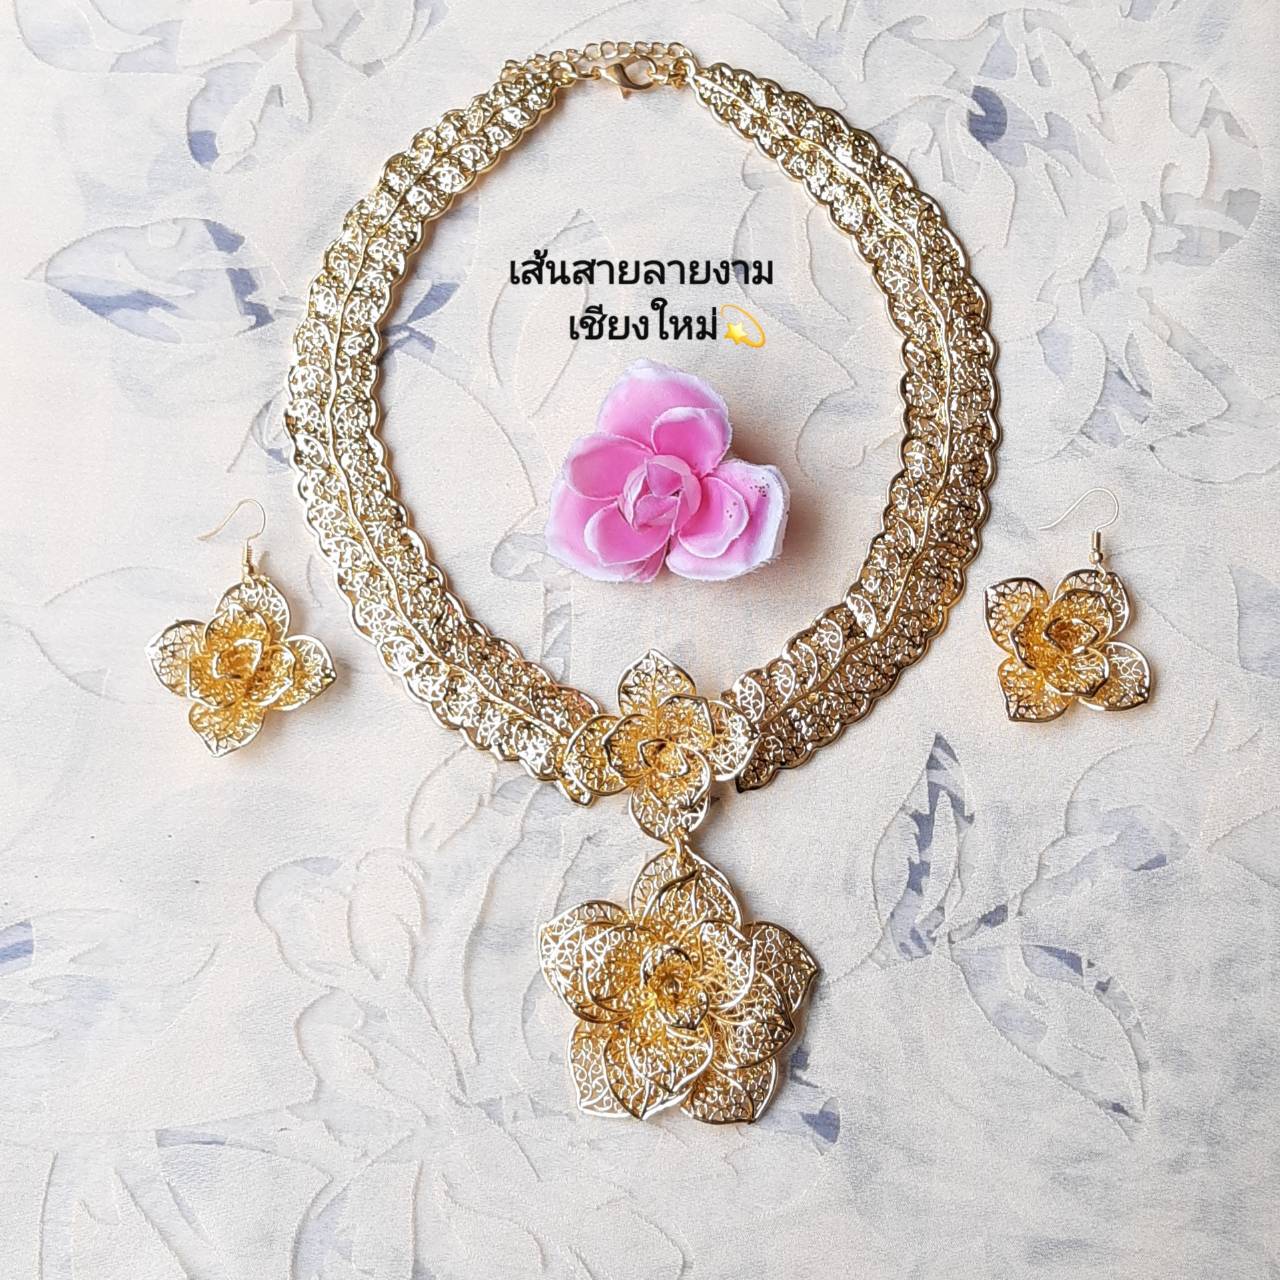 สร้อยคอล้านนาสีทอง สร้อยคอชุดไทย พร้อมจี้รูปดอกไม้และต่างหูสวยงามมากๆ Chiangmai Product By Nai